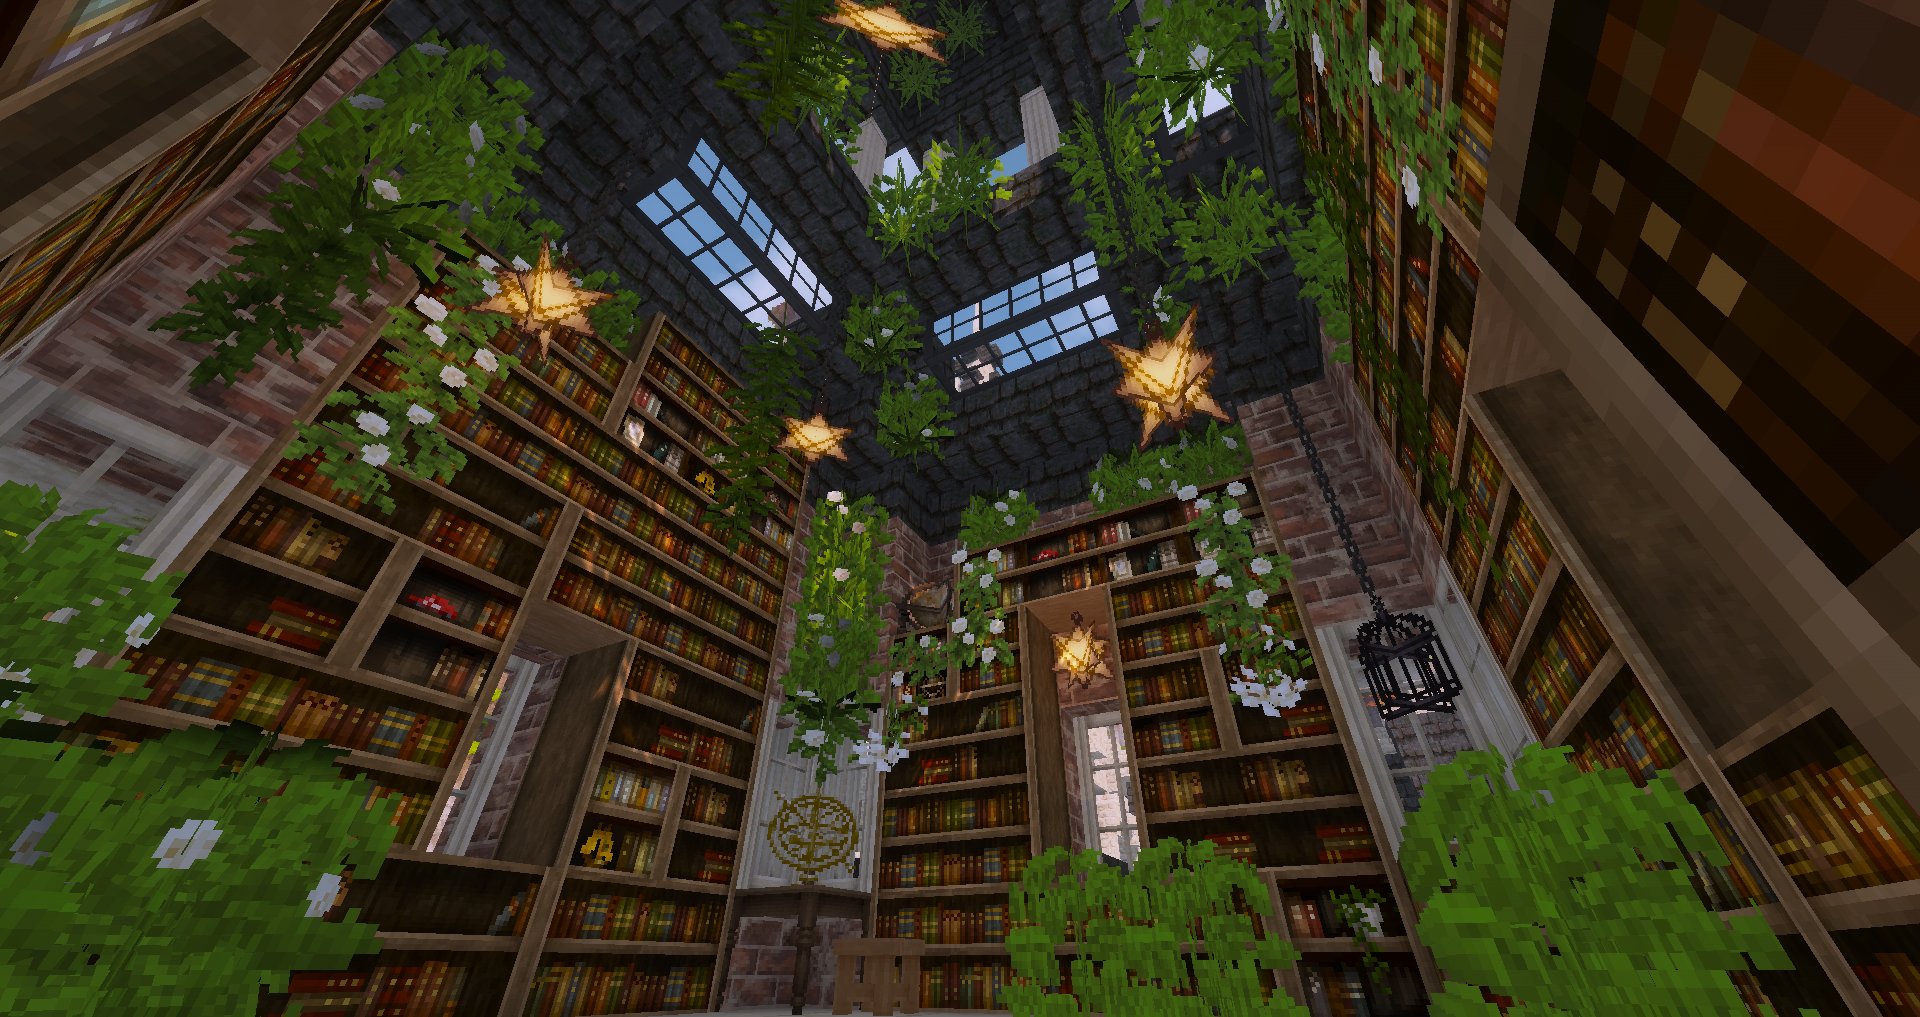 たくわん マイクラ ようやく古代図書館の内装一部屋分だけ完成しました でっかい広間を先にやってたらしんどくなっちゃったんで小さい部屋を先にやっちゃいます Minecraft Minecraft建築コミュ Cocricot T Co Tncbscdnca Twitter